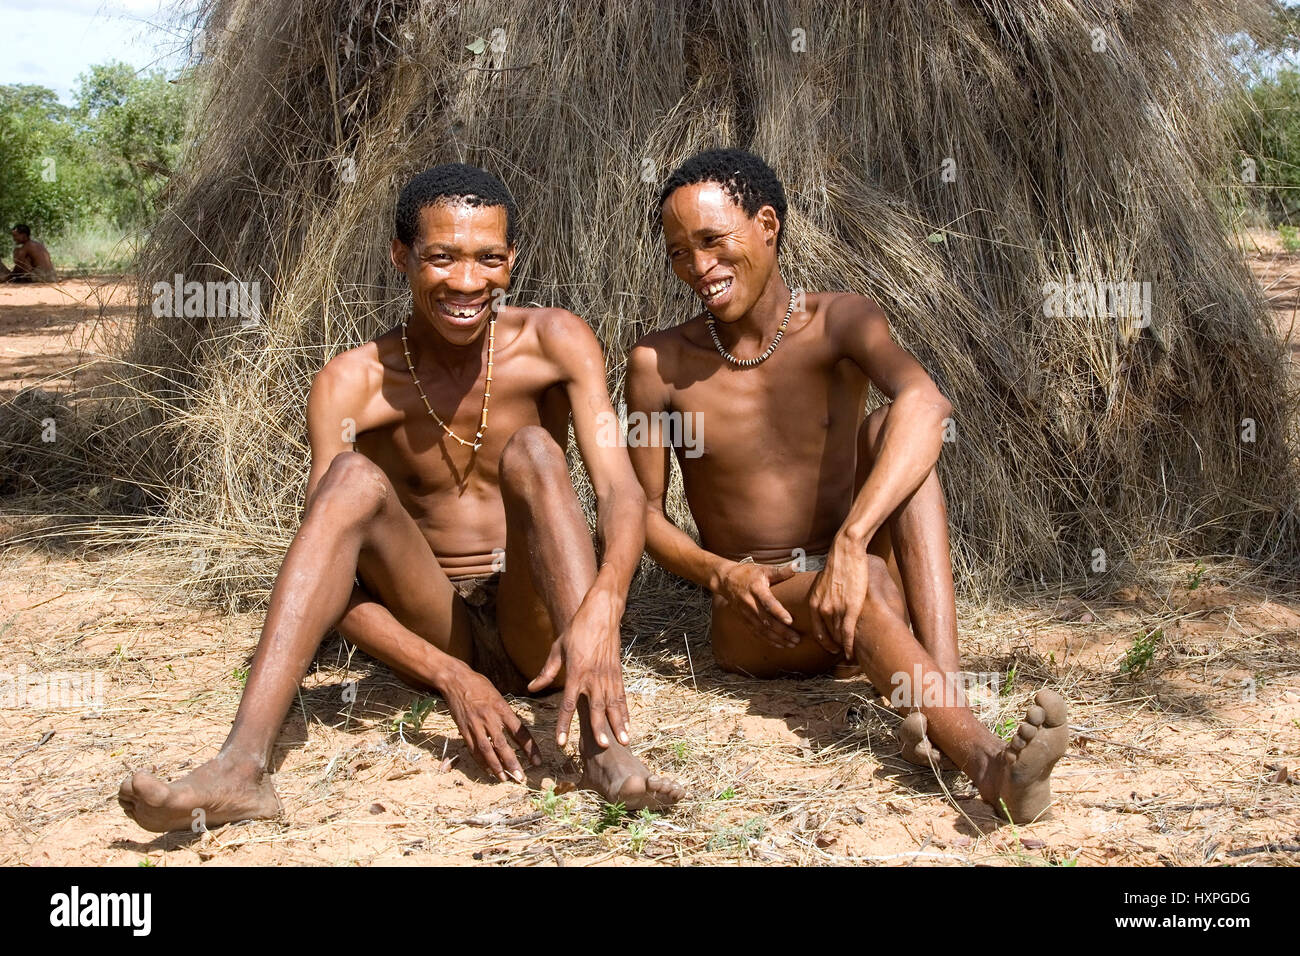 Bushman M?nner sit before her tratitionelen grass-overcast huts. Namibia, Buschmann Männer sitzen vor ihren tratitionelen Grasbedeckten Hütten. Namibi Stock Photo